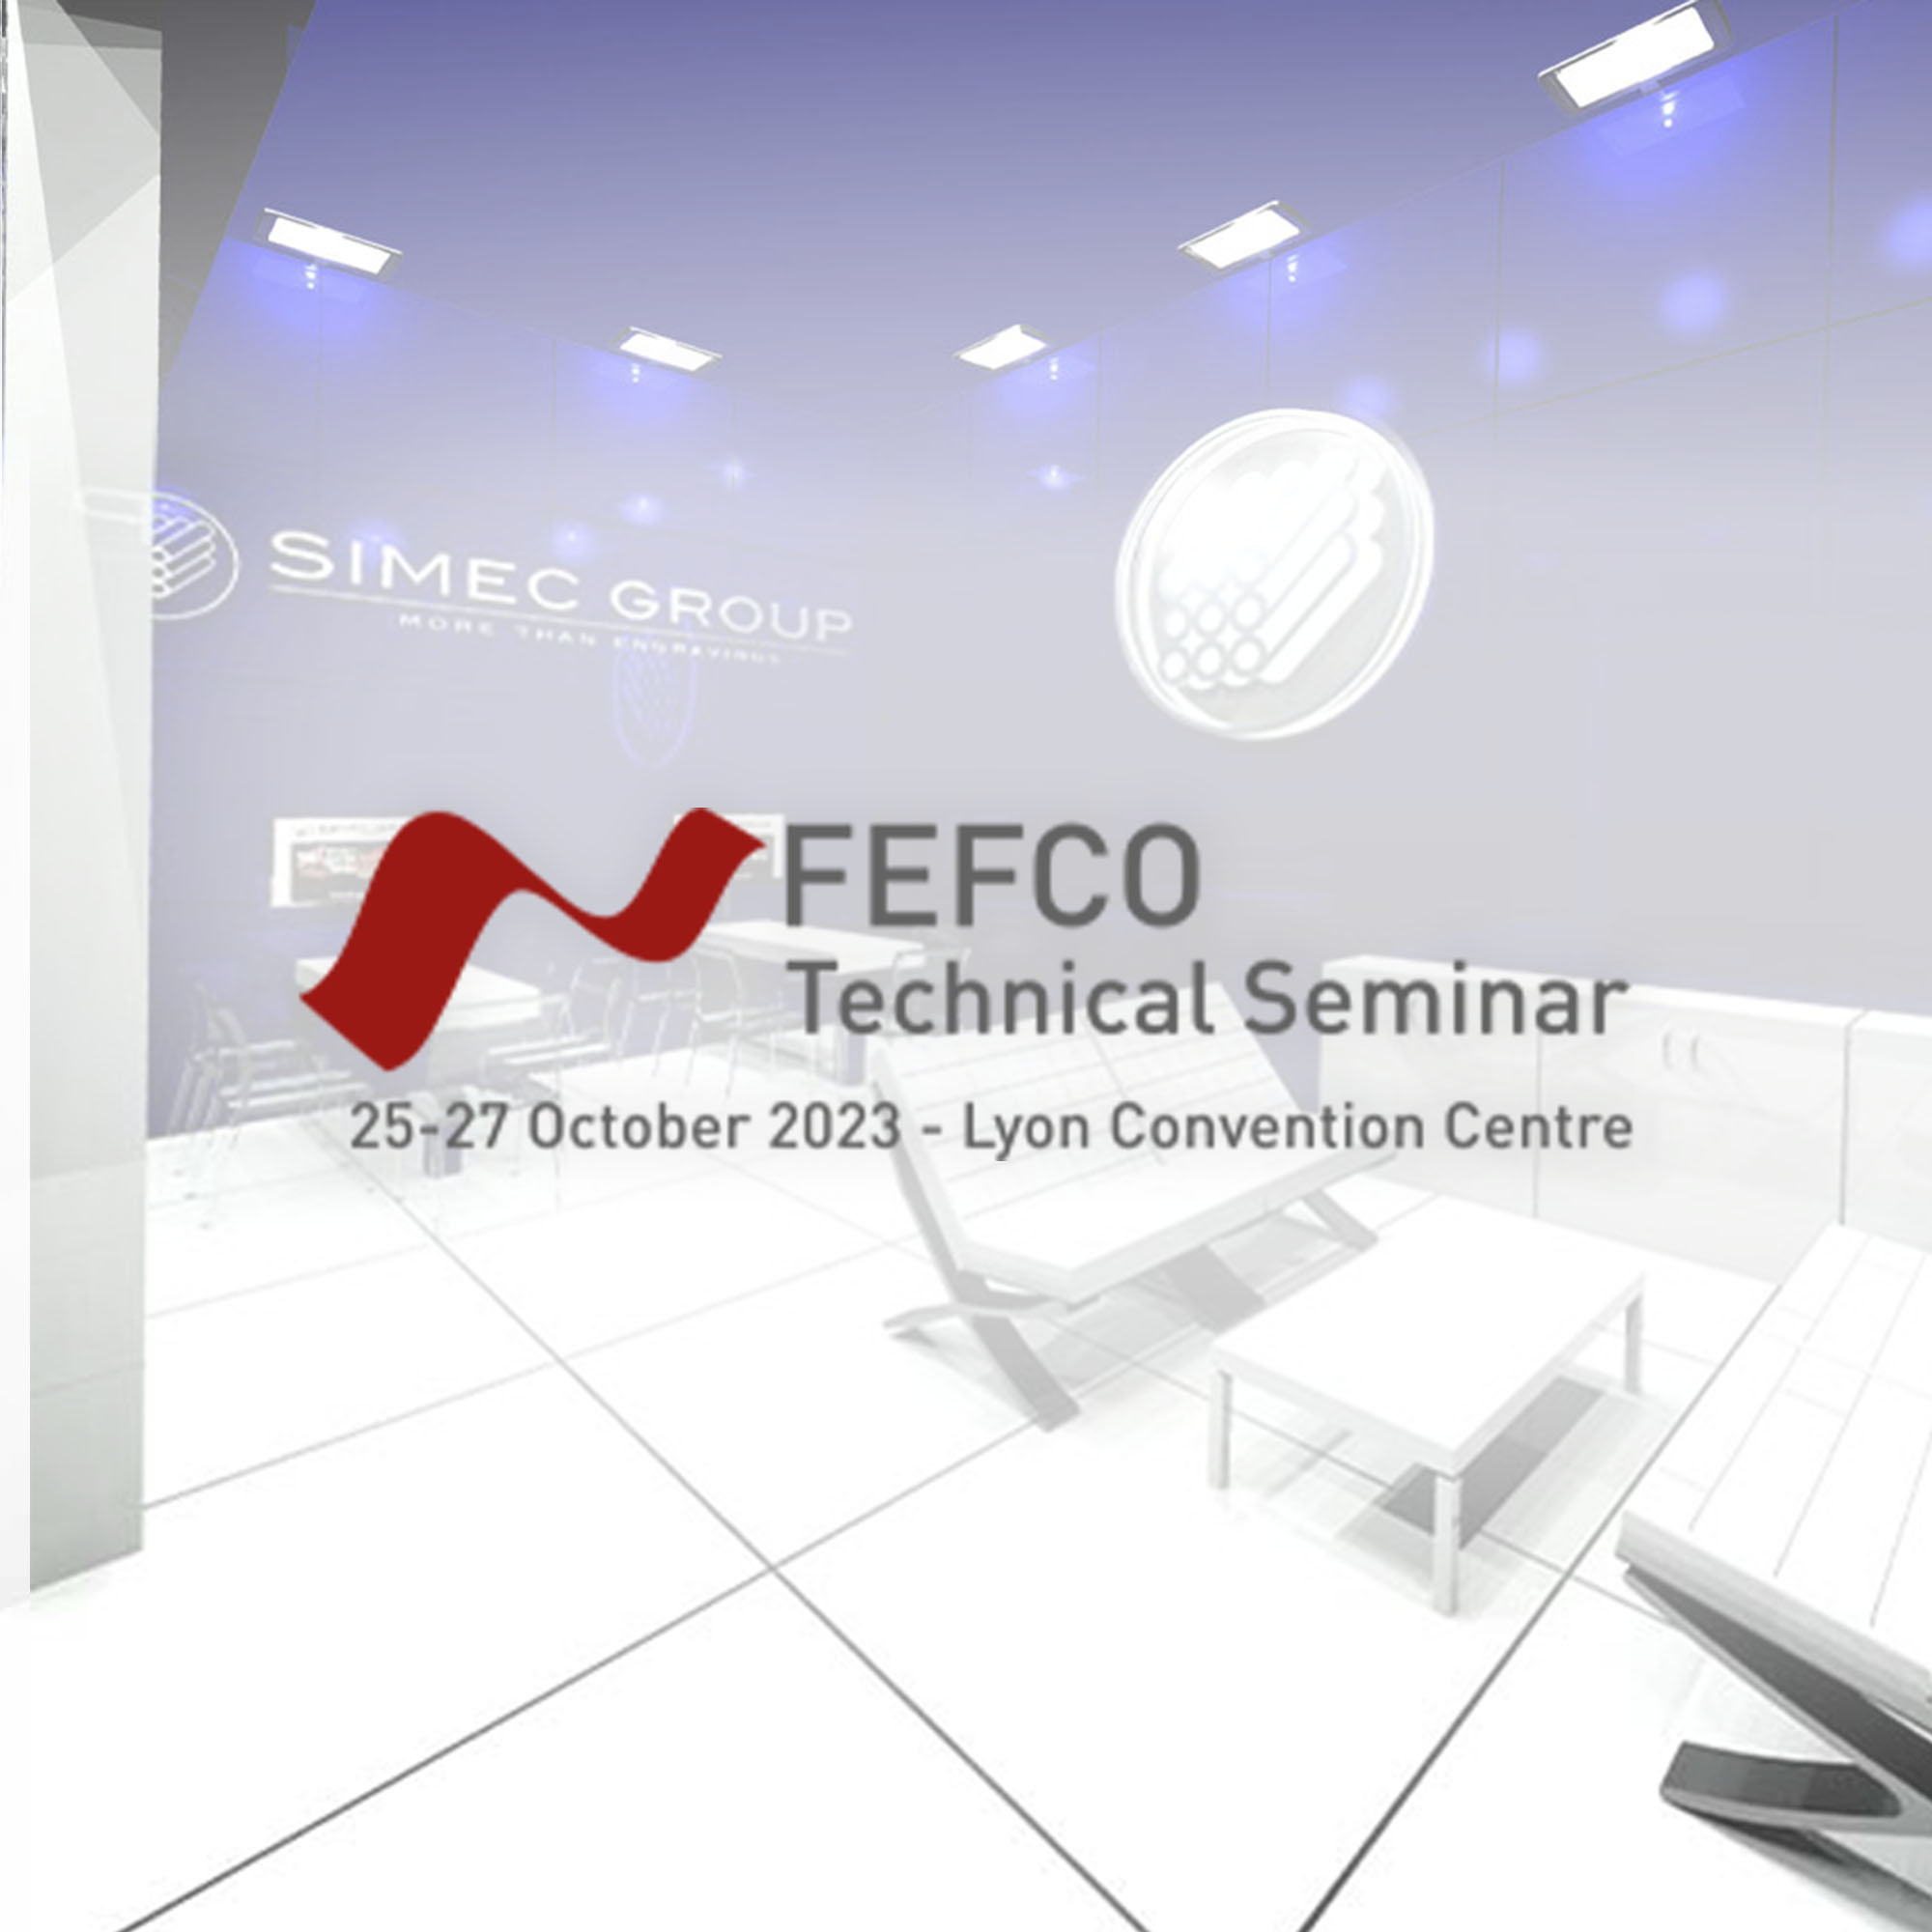 FEFCO 2023 – Technical Seminar Lyon